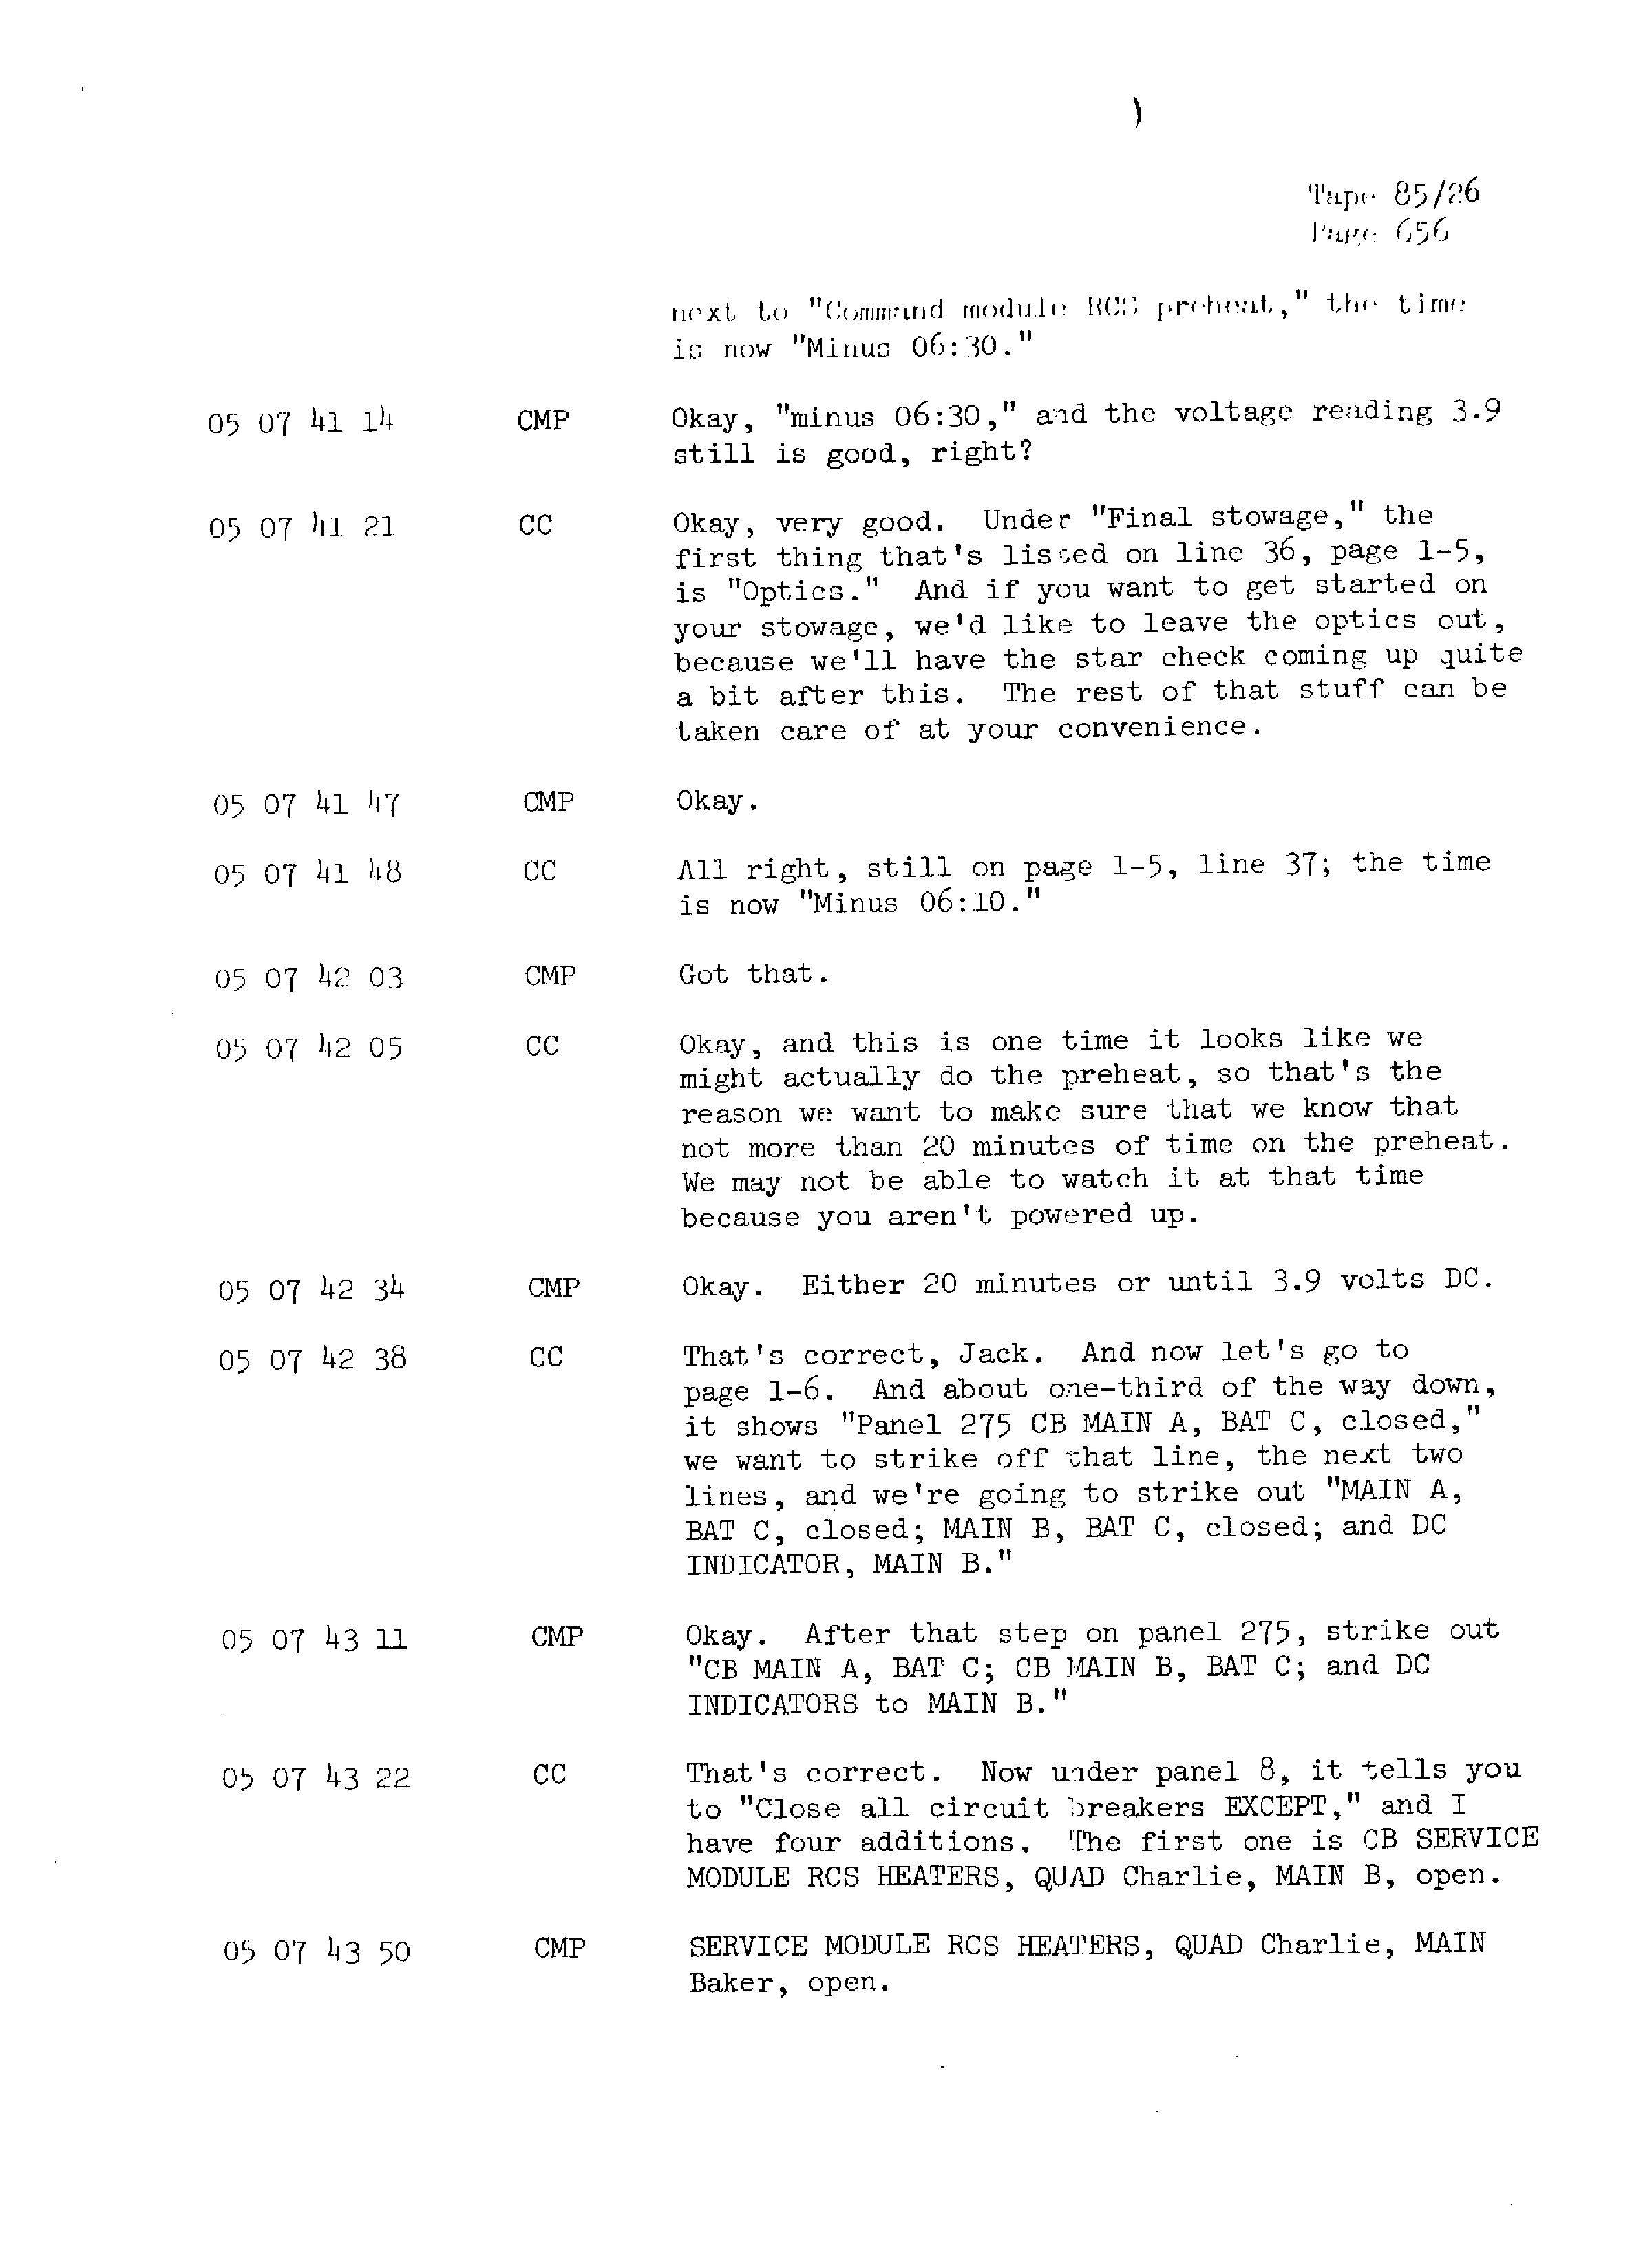 Page 663 of Apollo 13’s original transcript